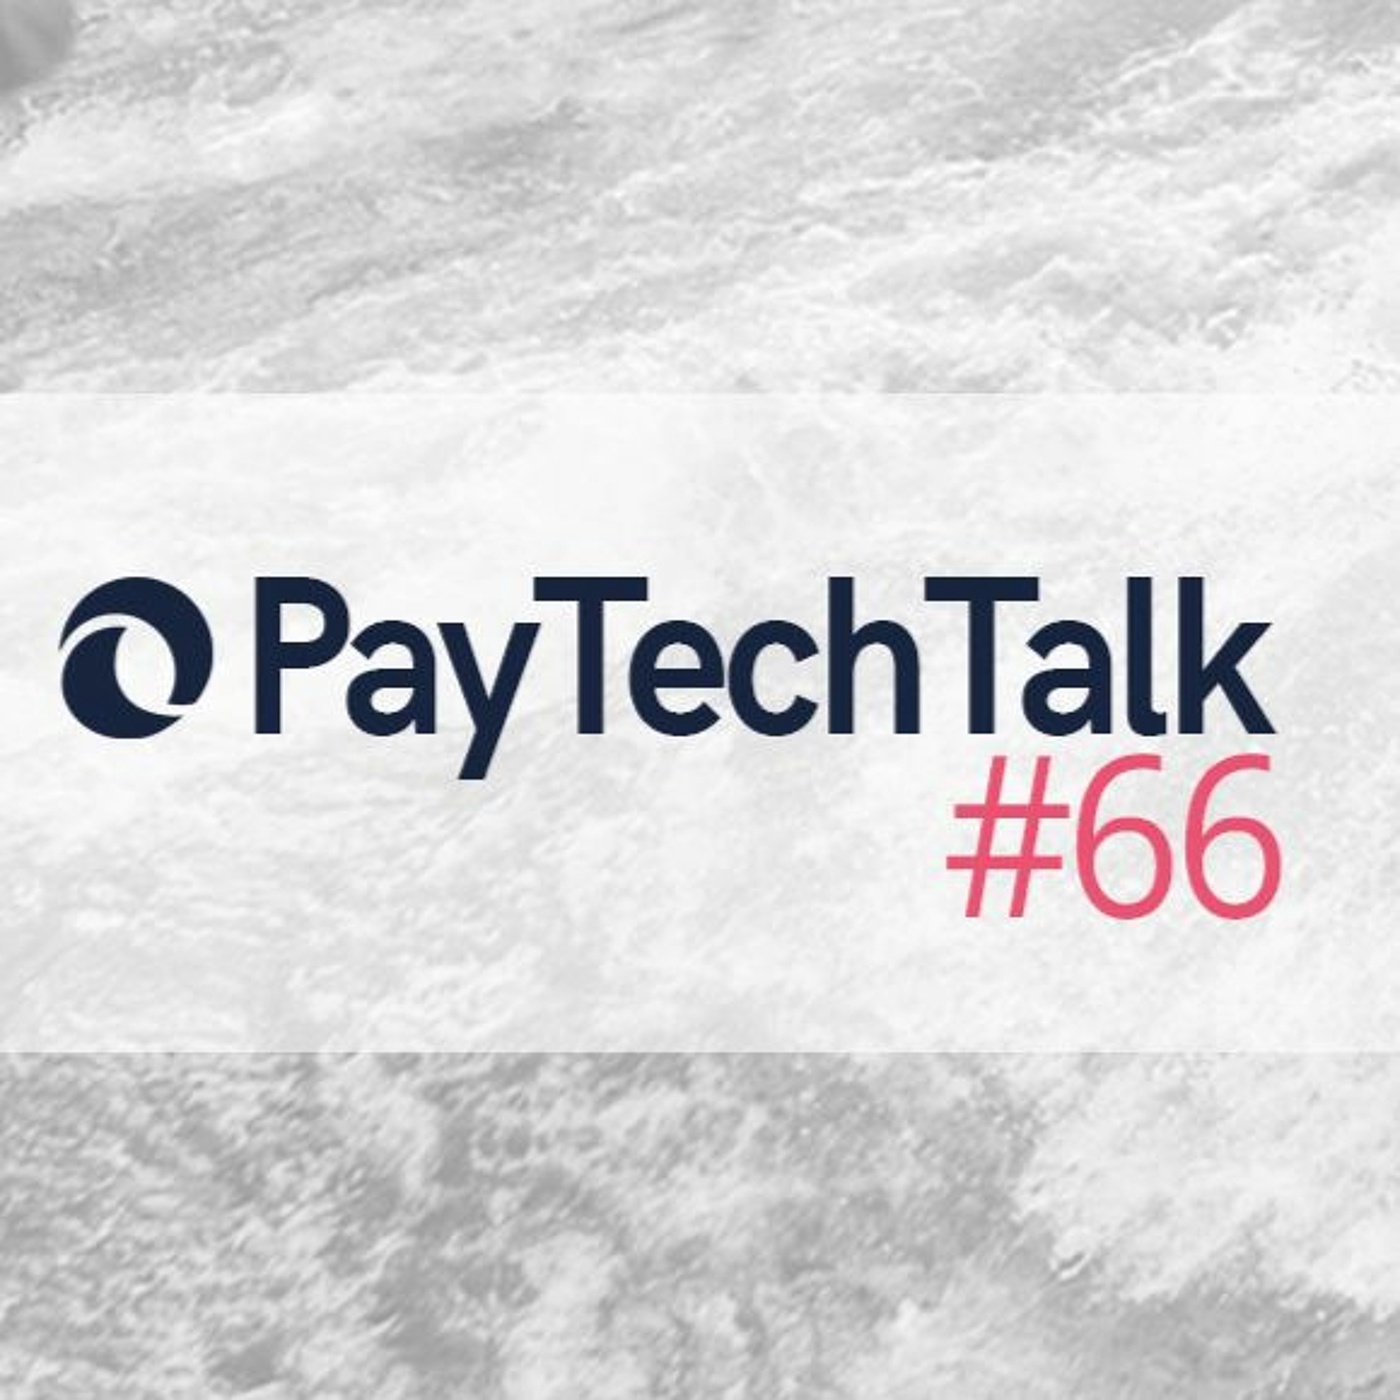 PayTechTalk #66 - eWpG | Gesetz zur Einführung von elektronischen Wertpapieren